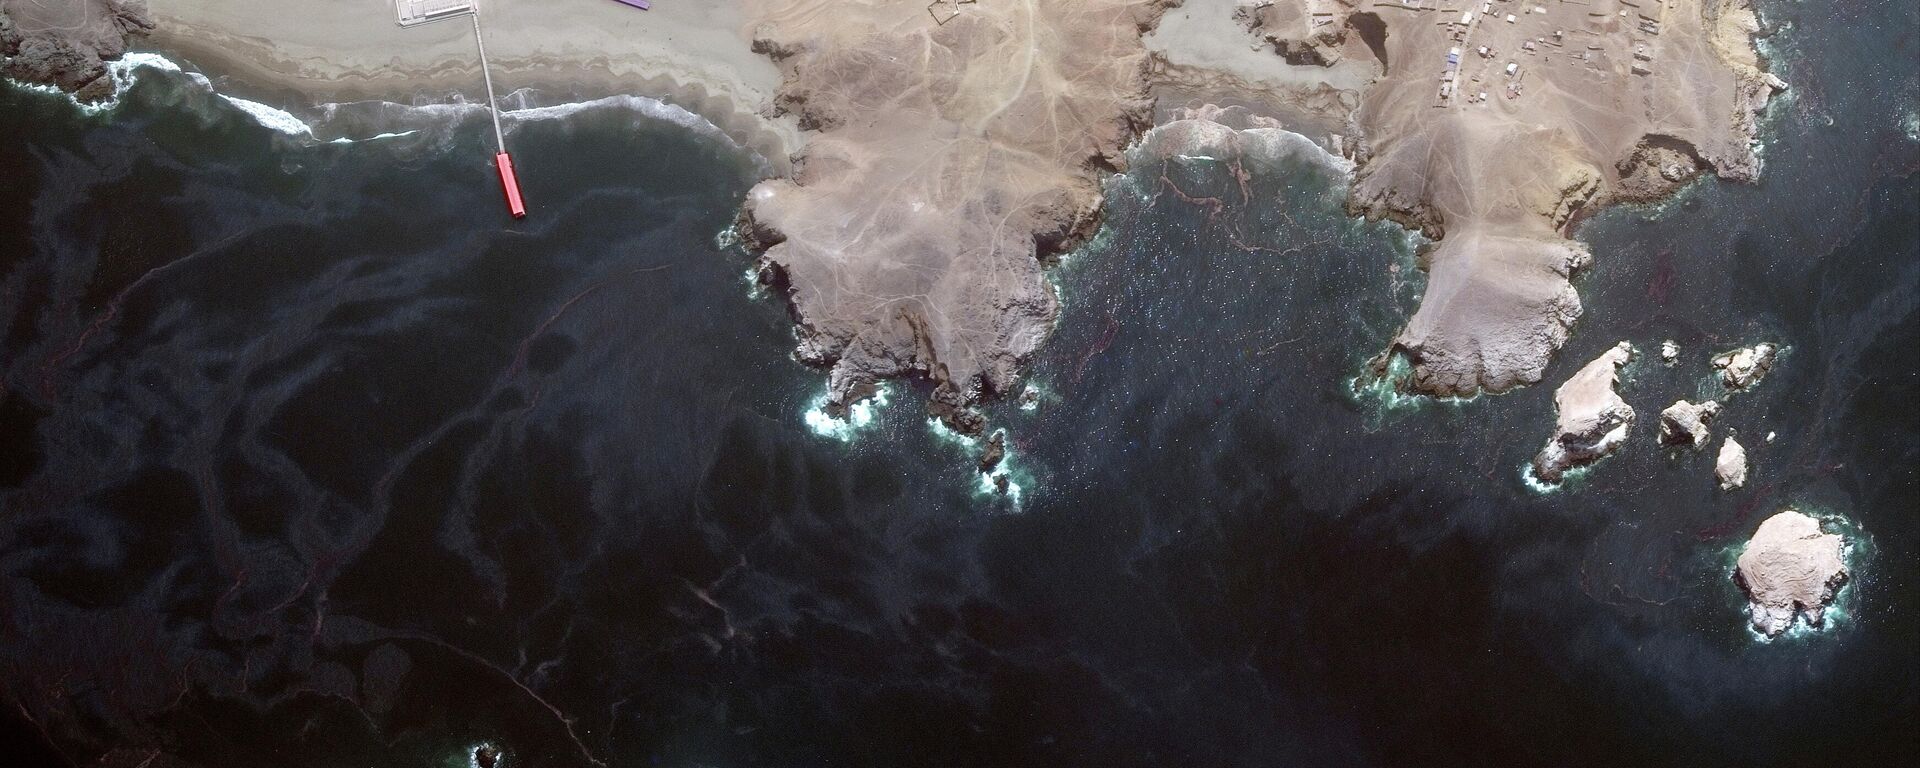 El daño causado por el derrame de petróleo ocurrido en el mar de Lima, Perú - Sputnik Mundo, 1920, 25.01.2022